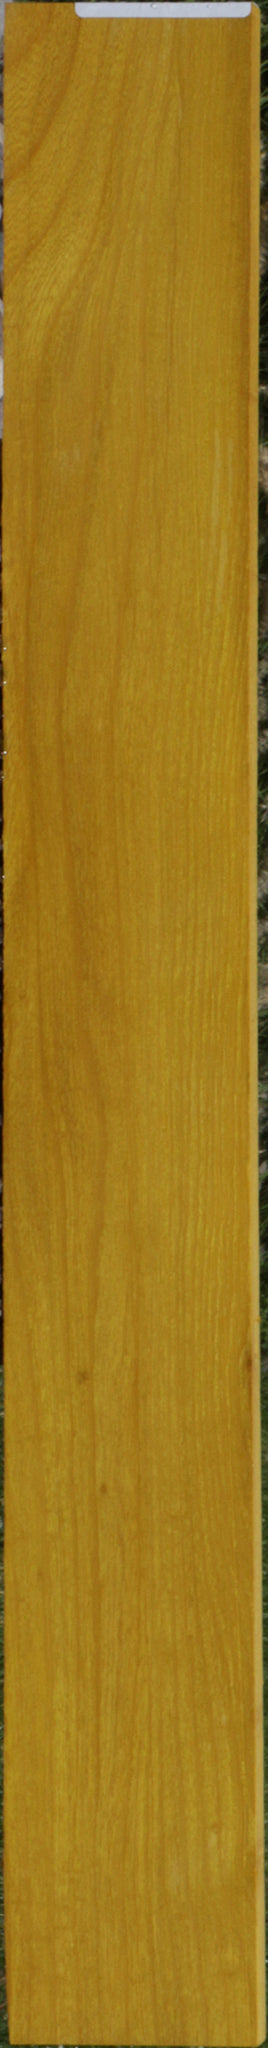 Osage Orange Micro Lumber